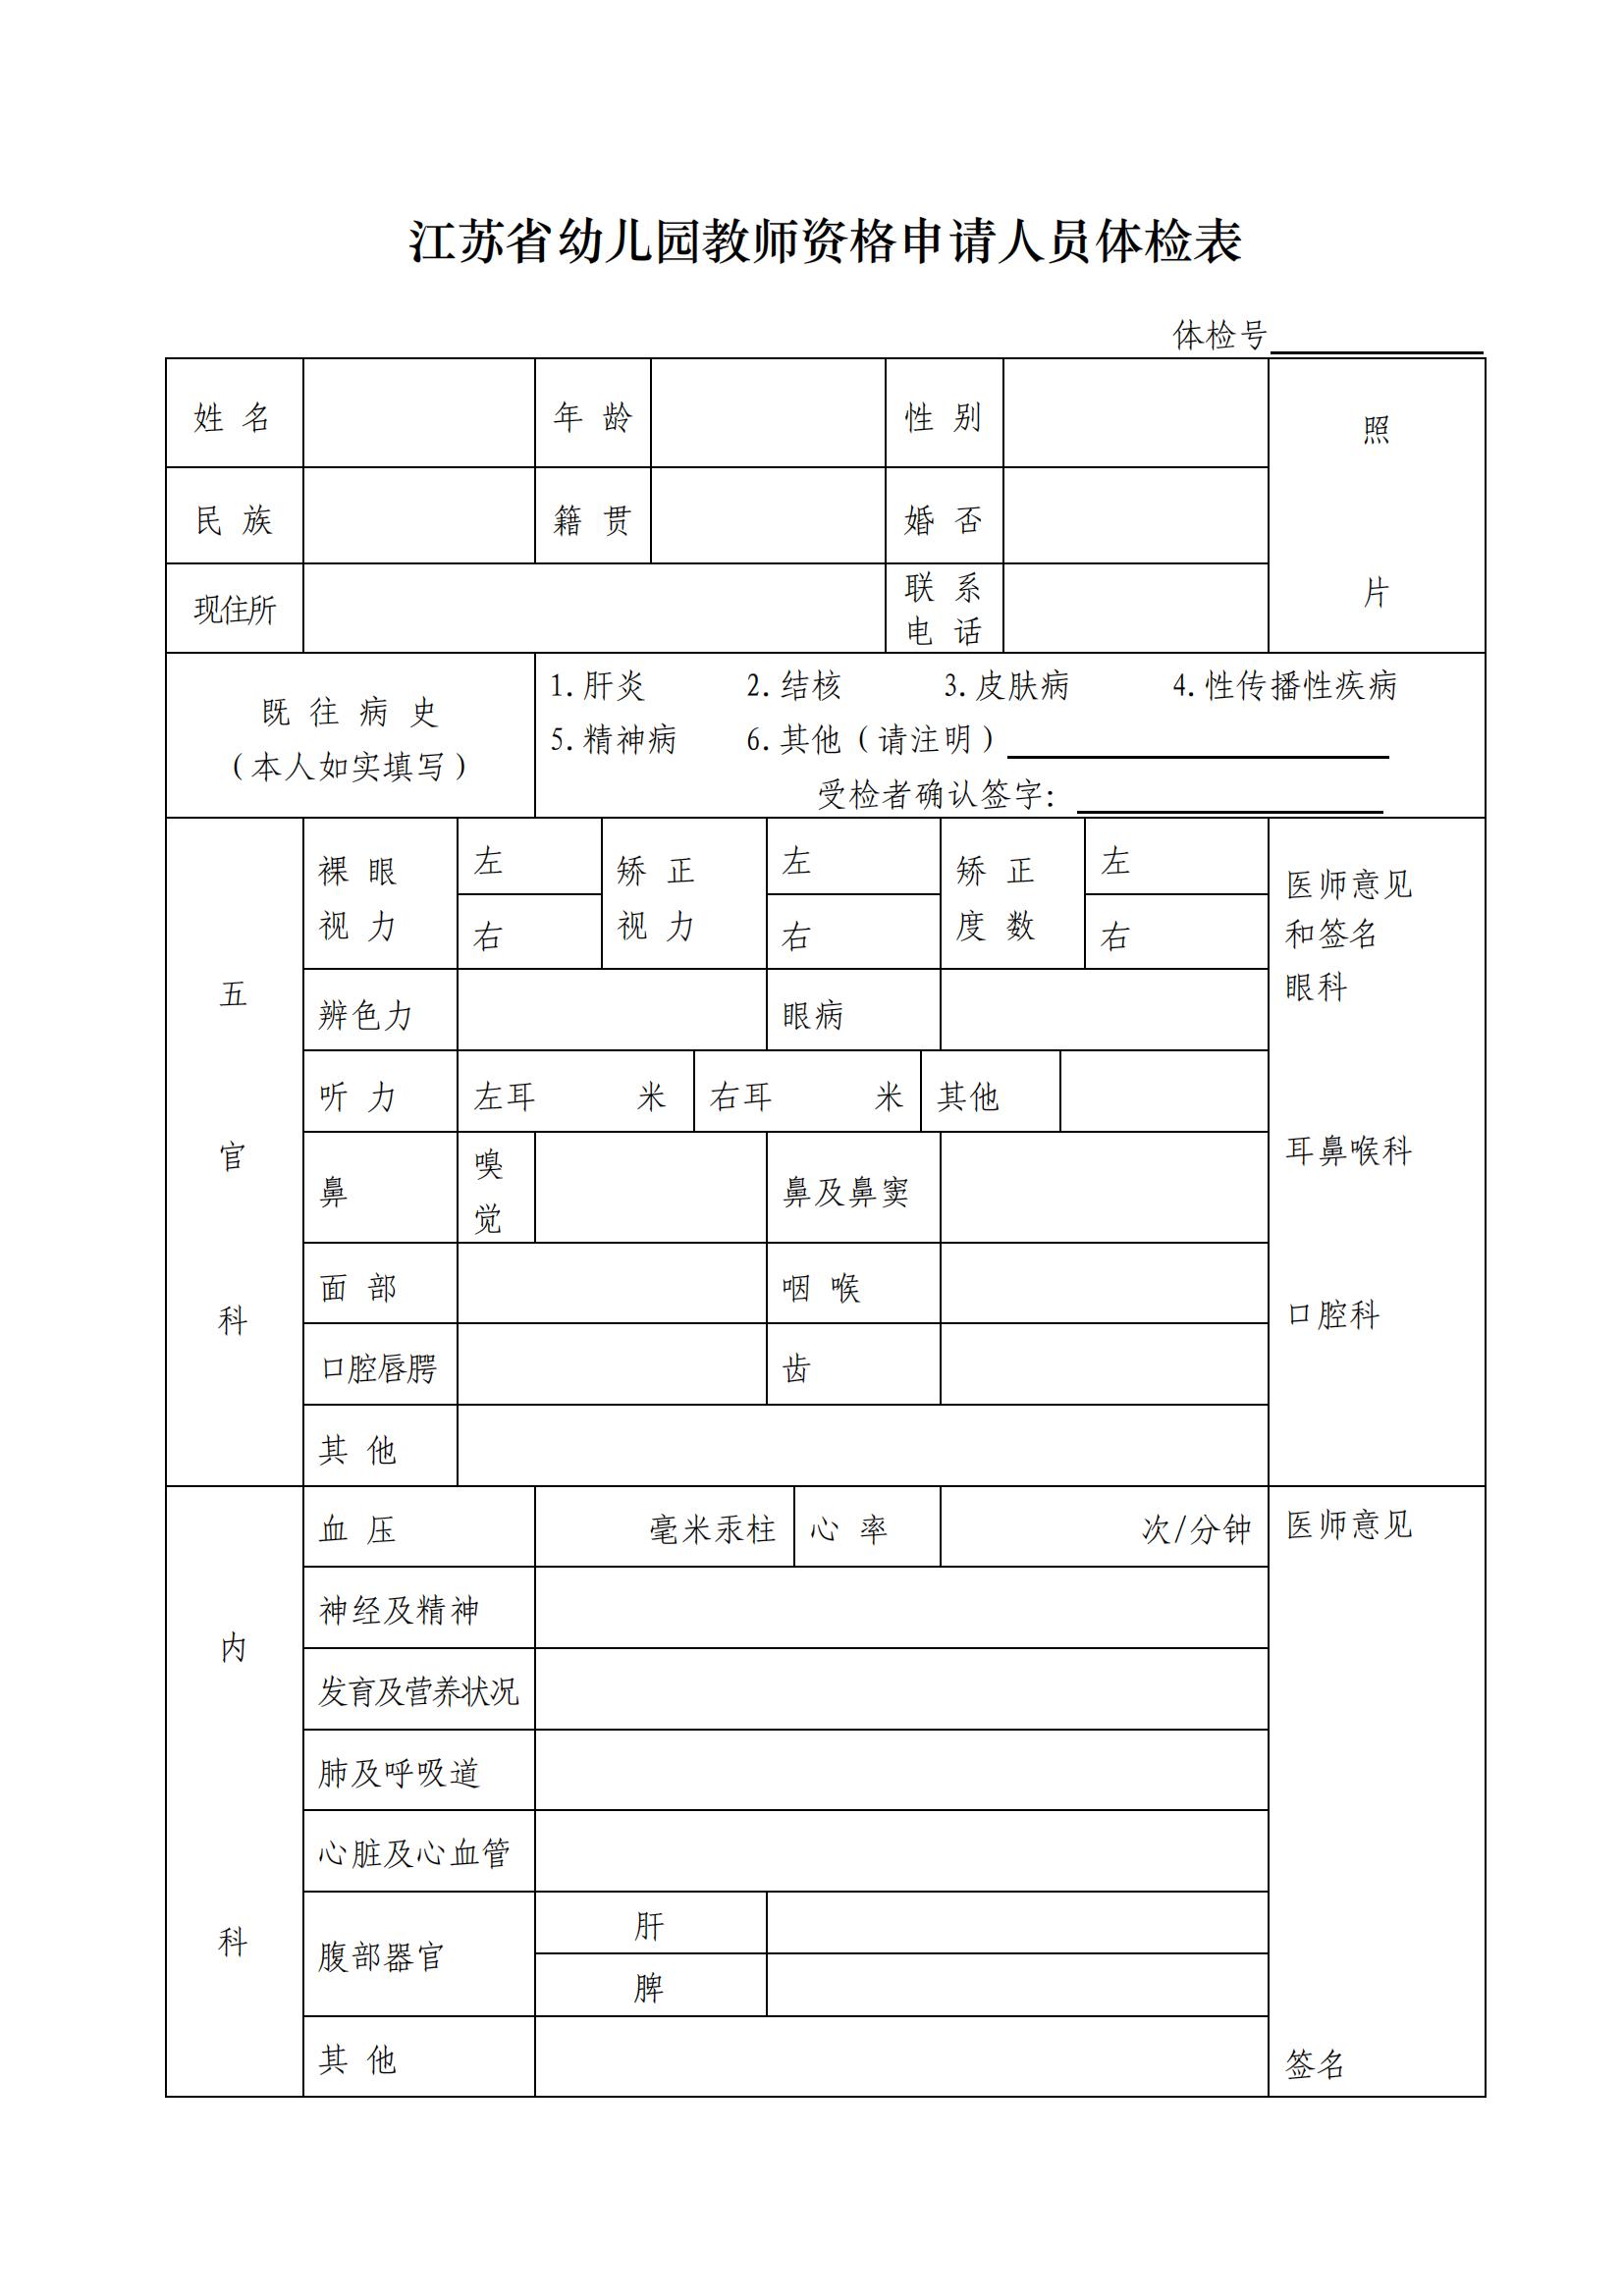 江苏省幼儿园教师资格申请人员体检表(A4纸正反打印_幼儿园申请人专用)